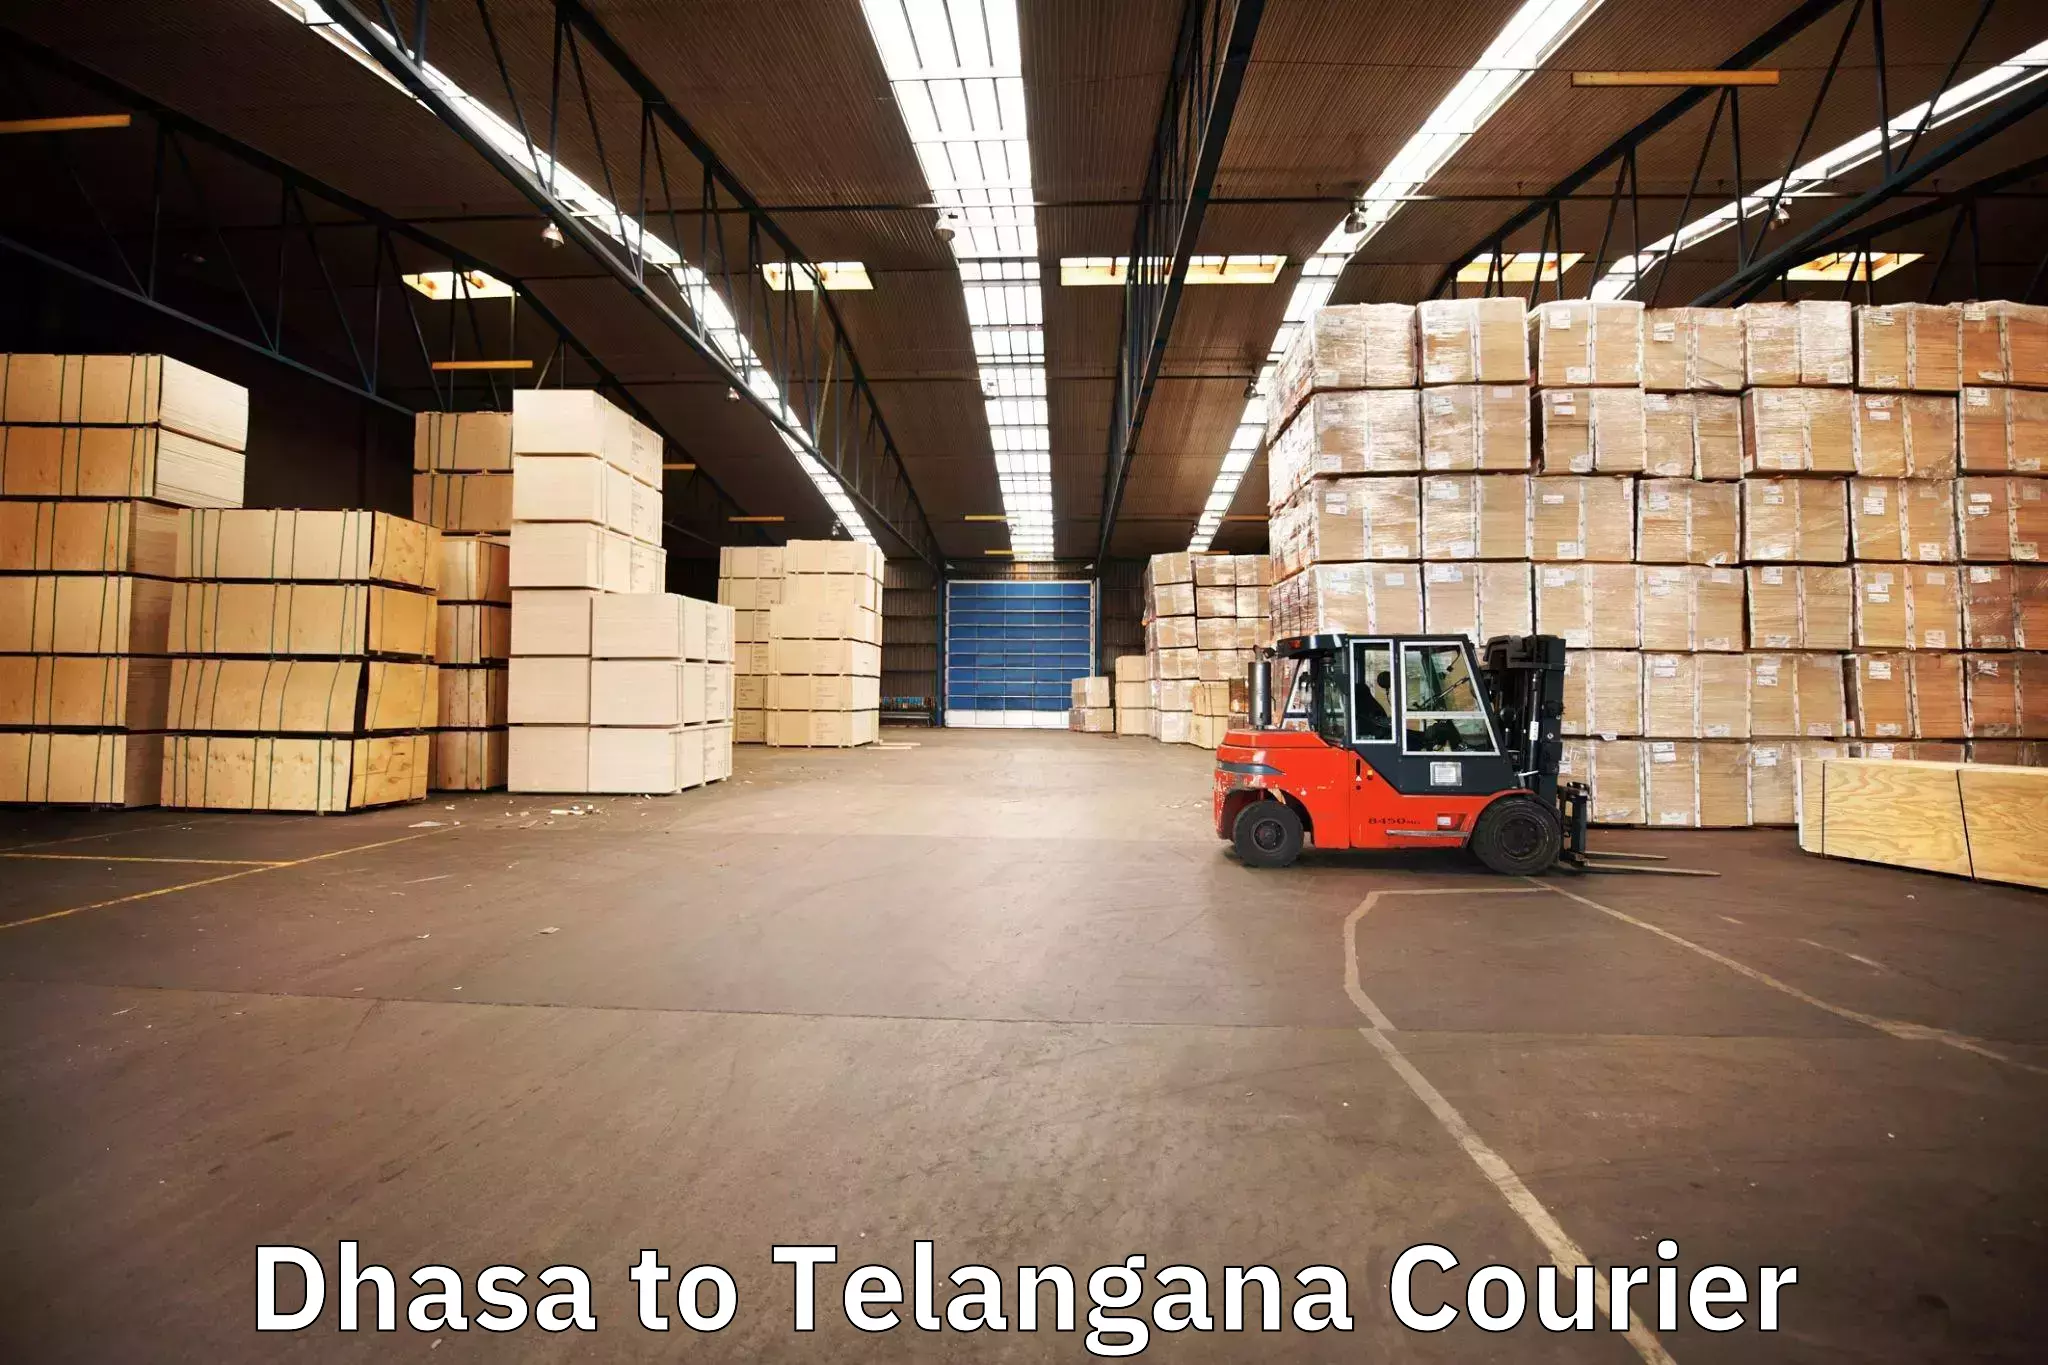 Expert goods movers Dhasa to Yellareddy